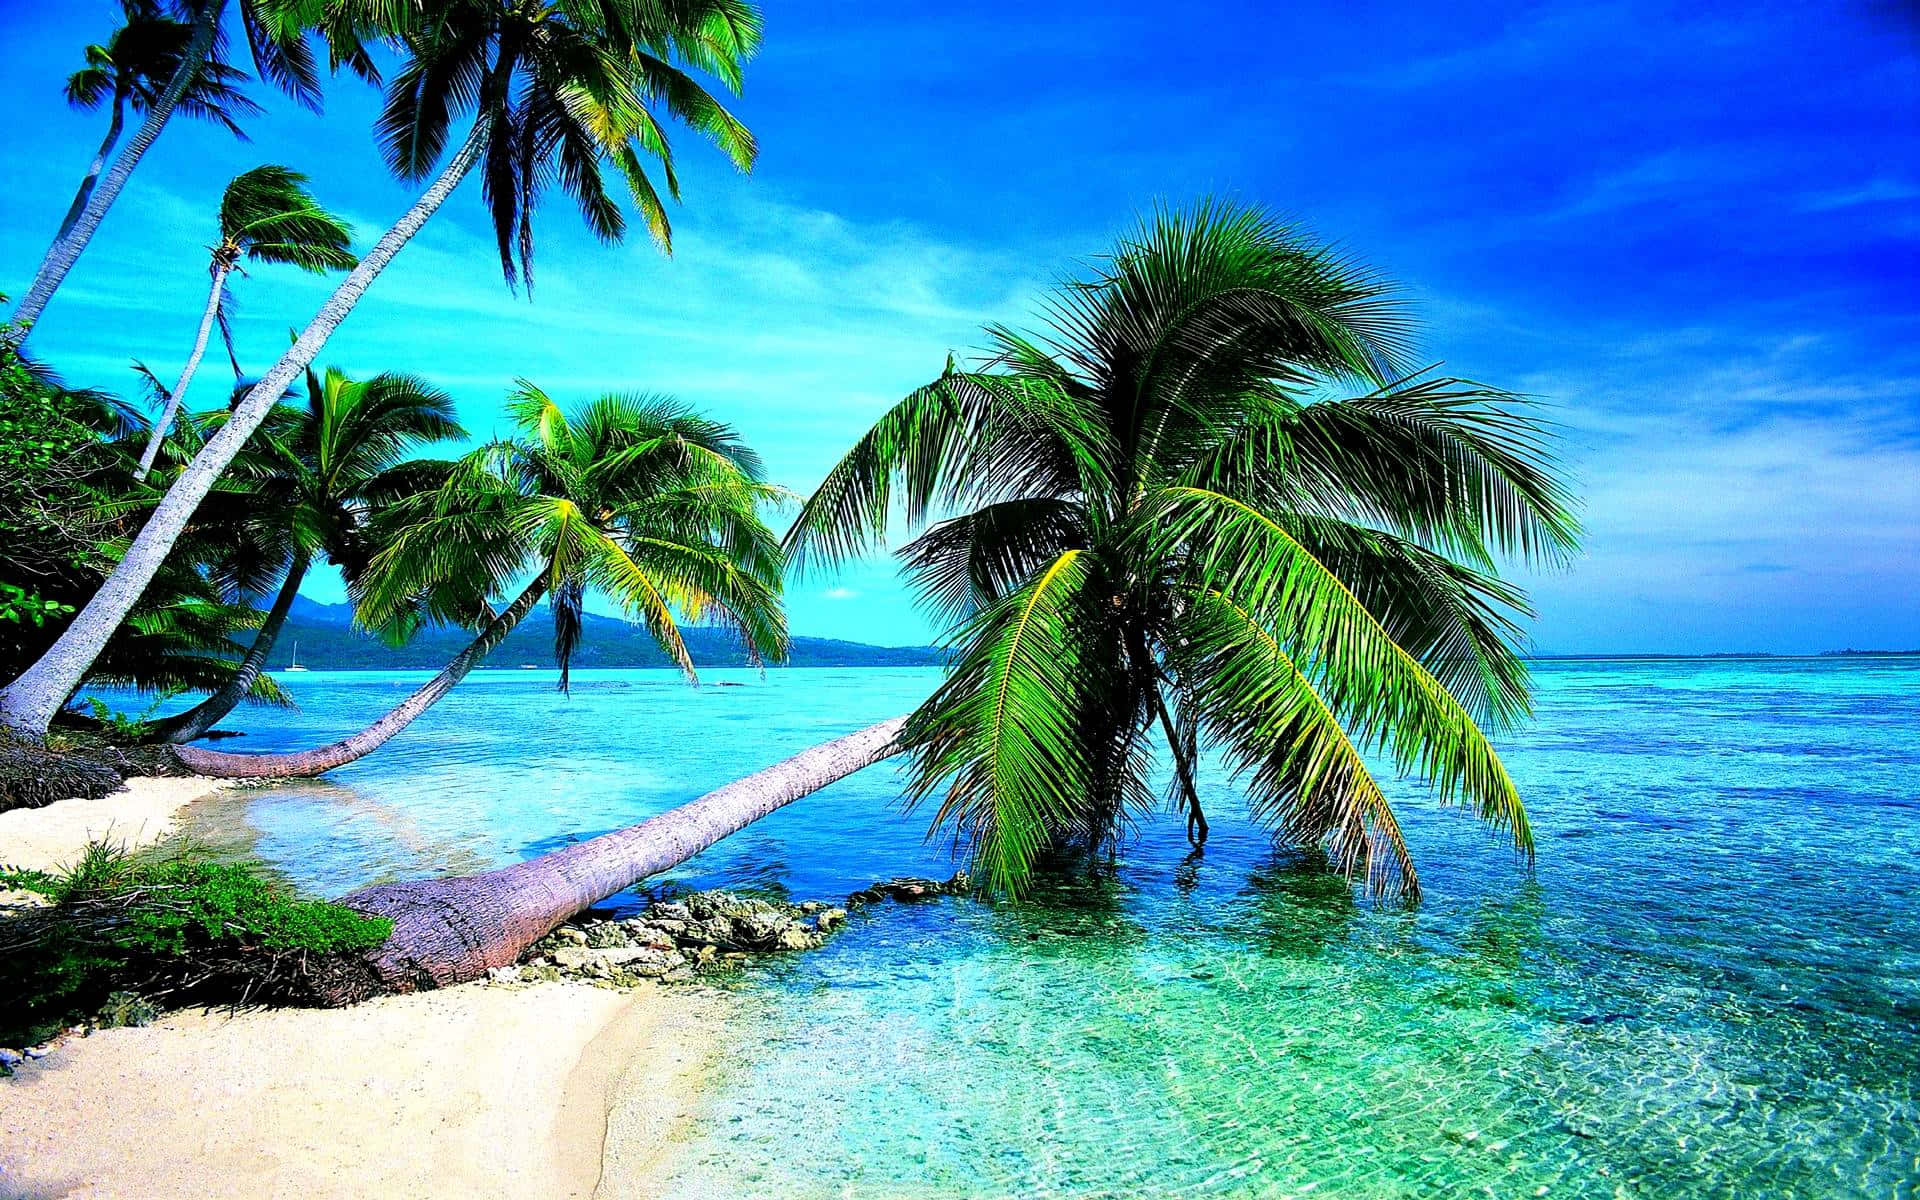 Tropical Ocean Paradise on a Sunny Day